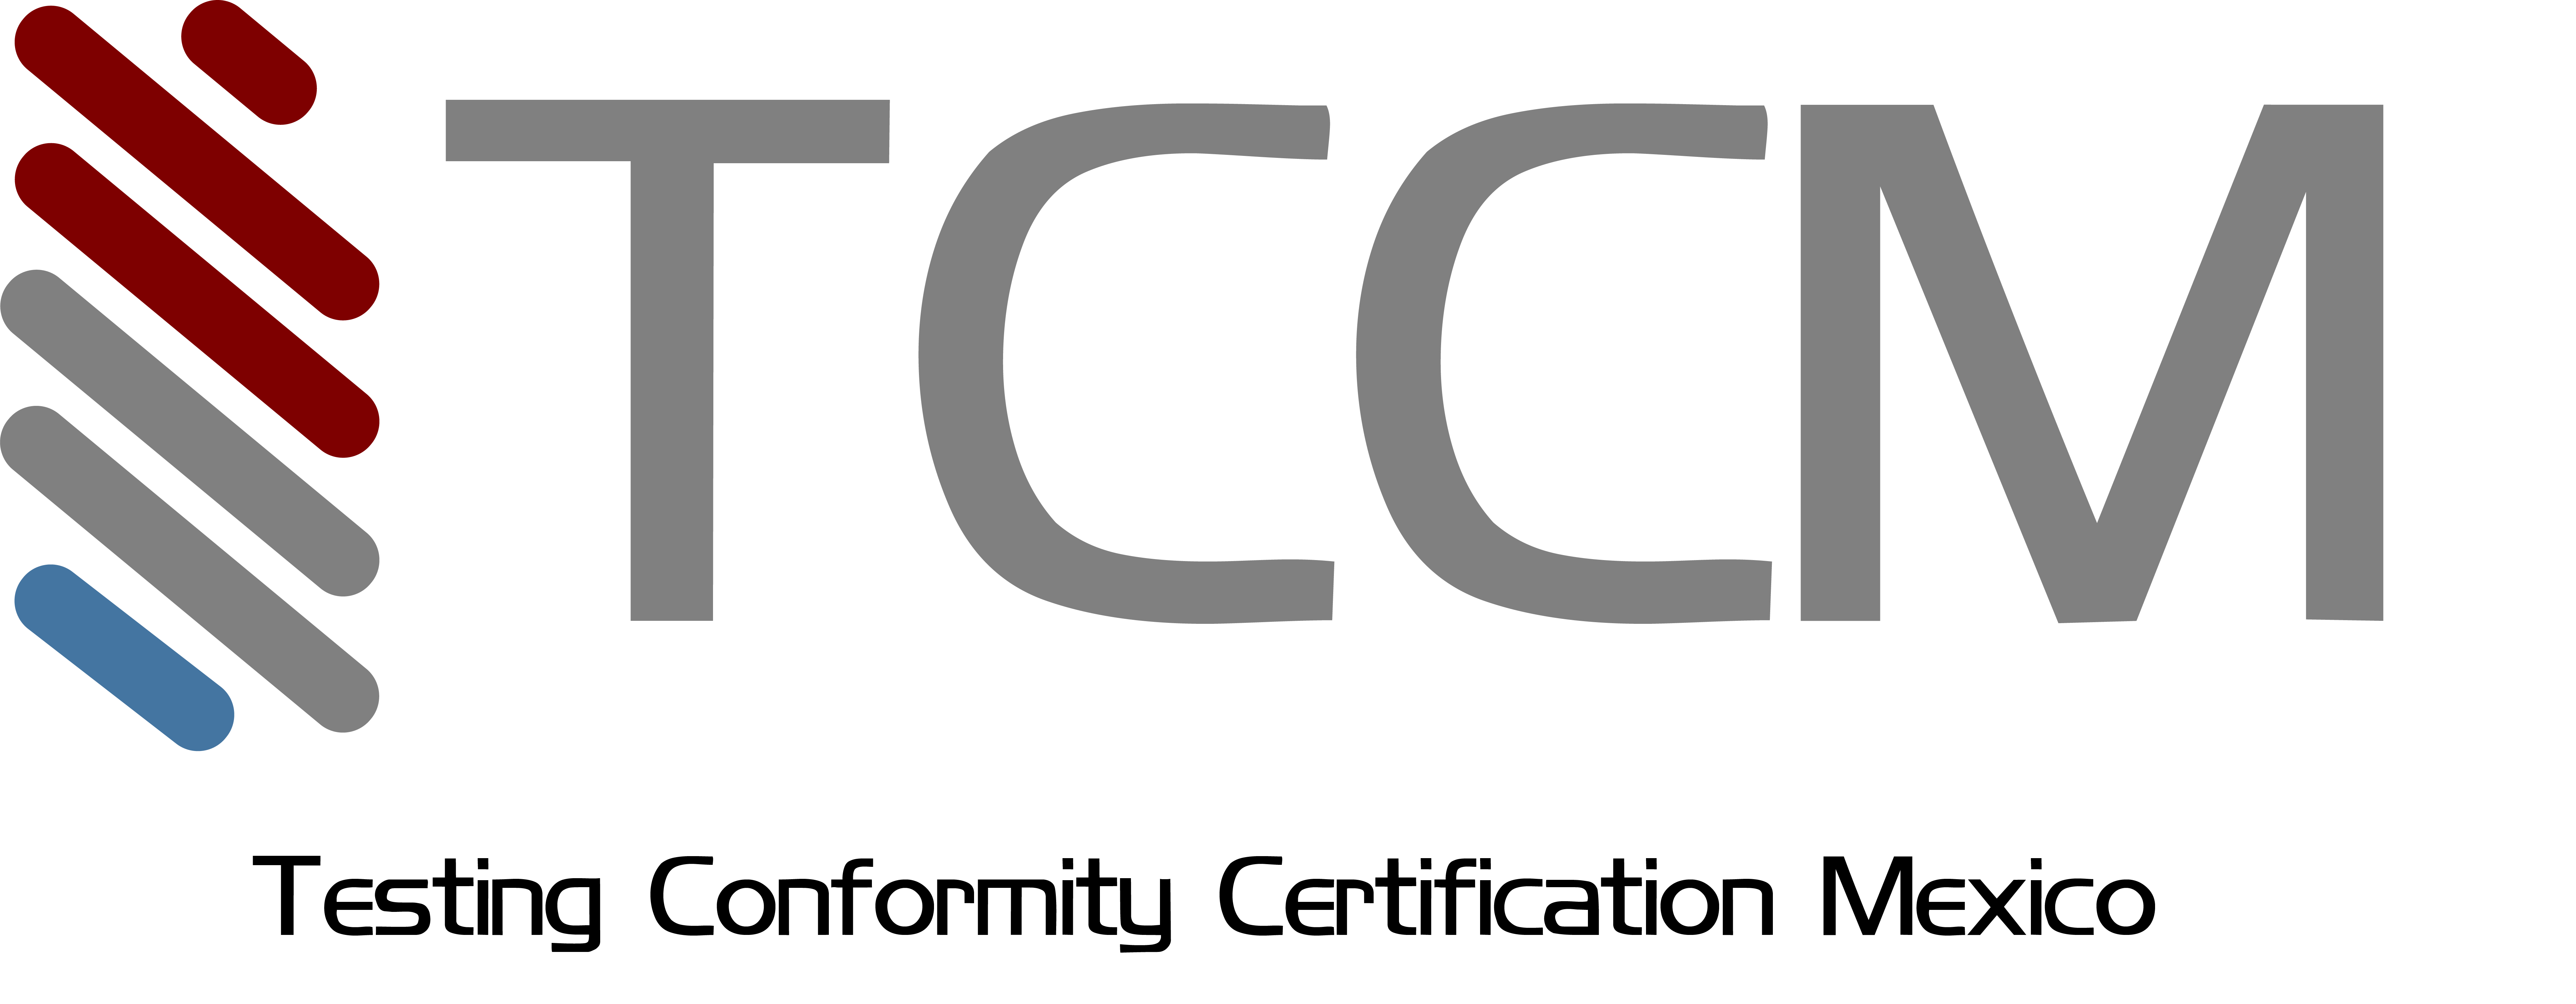 TCCM Certificaciones y Capacitación en Normas ISO